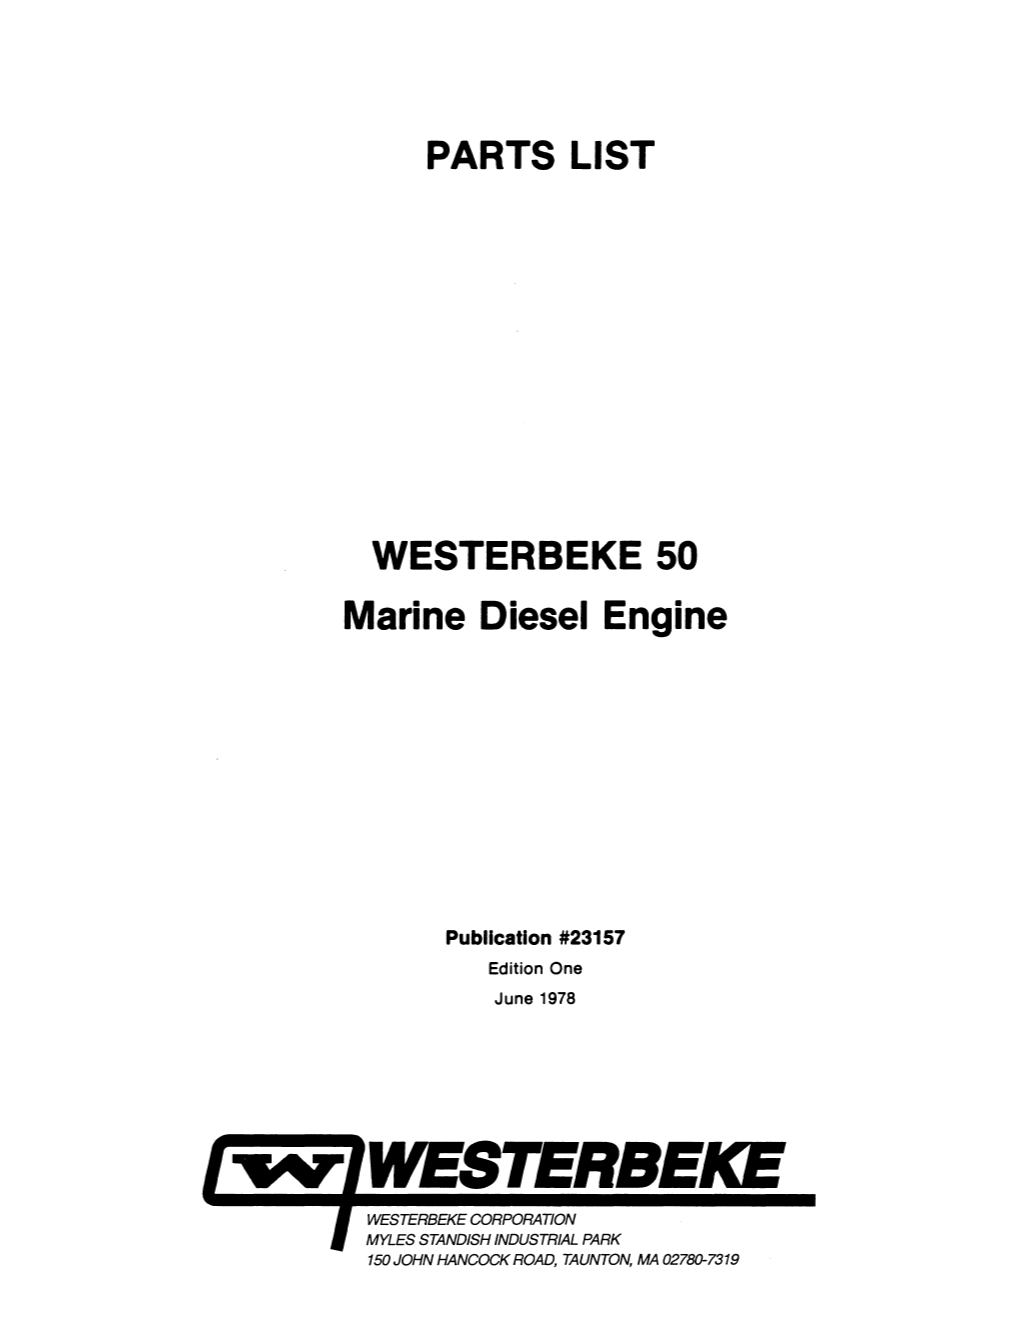 PARTS LIST WESTERBEKE 50 Marine Diesel Engine